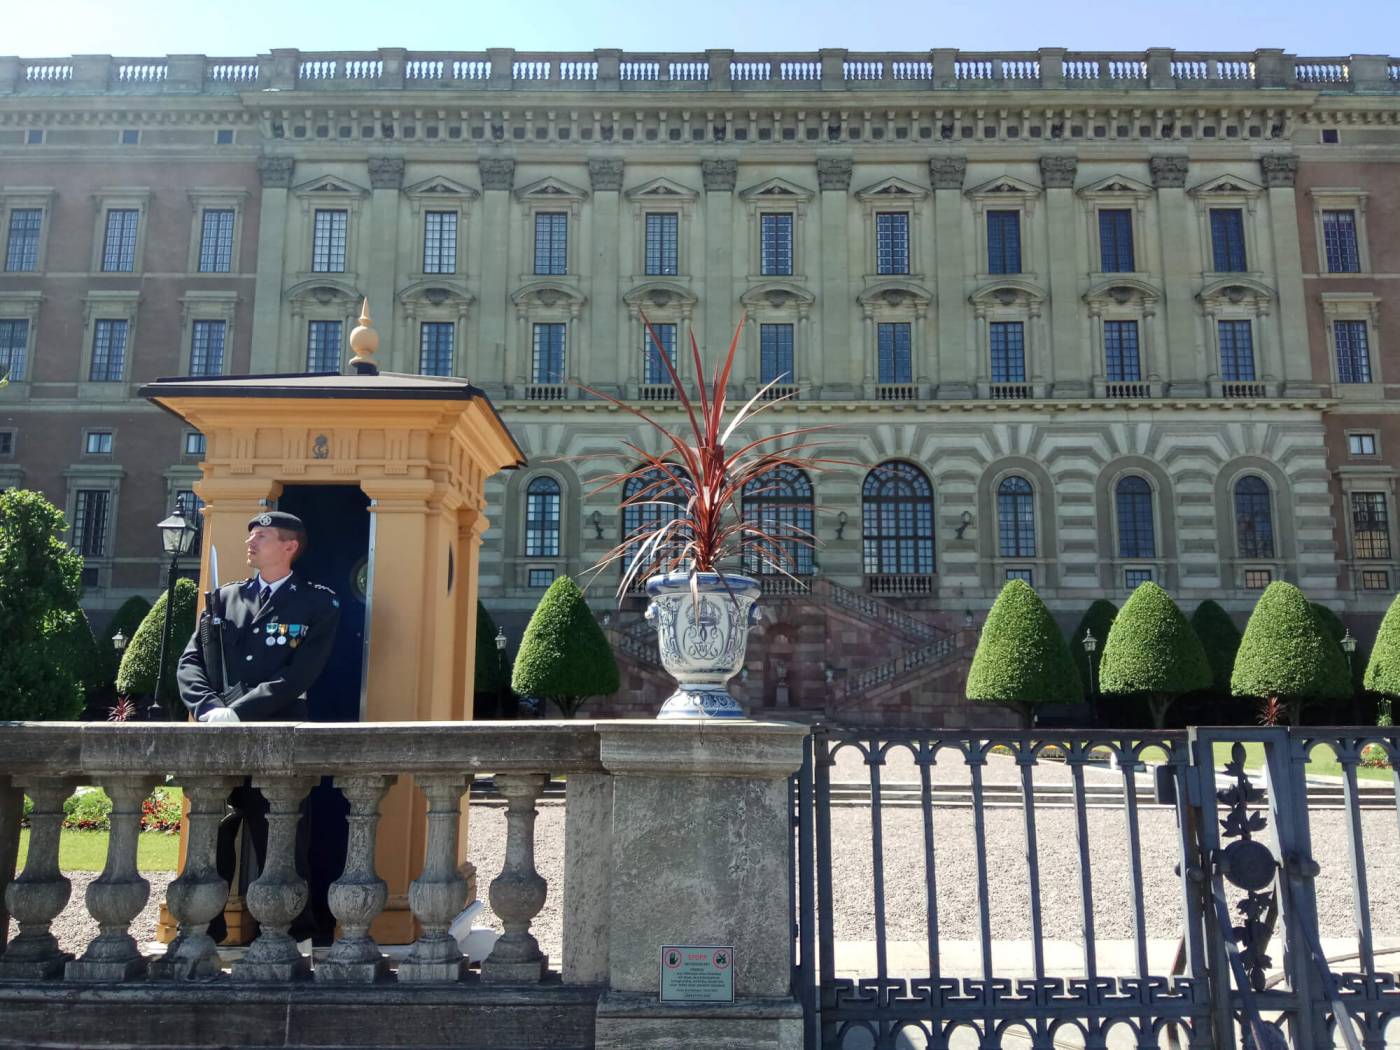 Задний фасад королевского дворца в Стокгольме